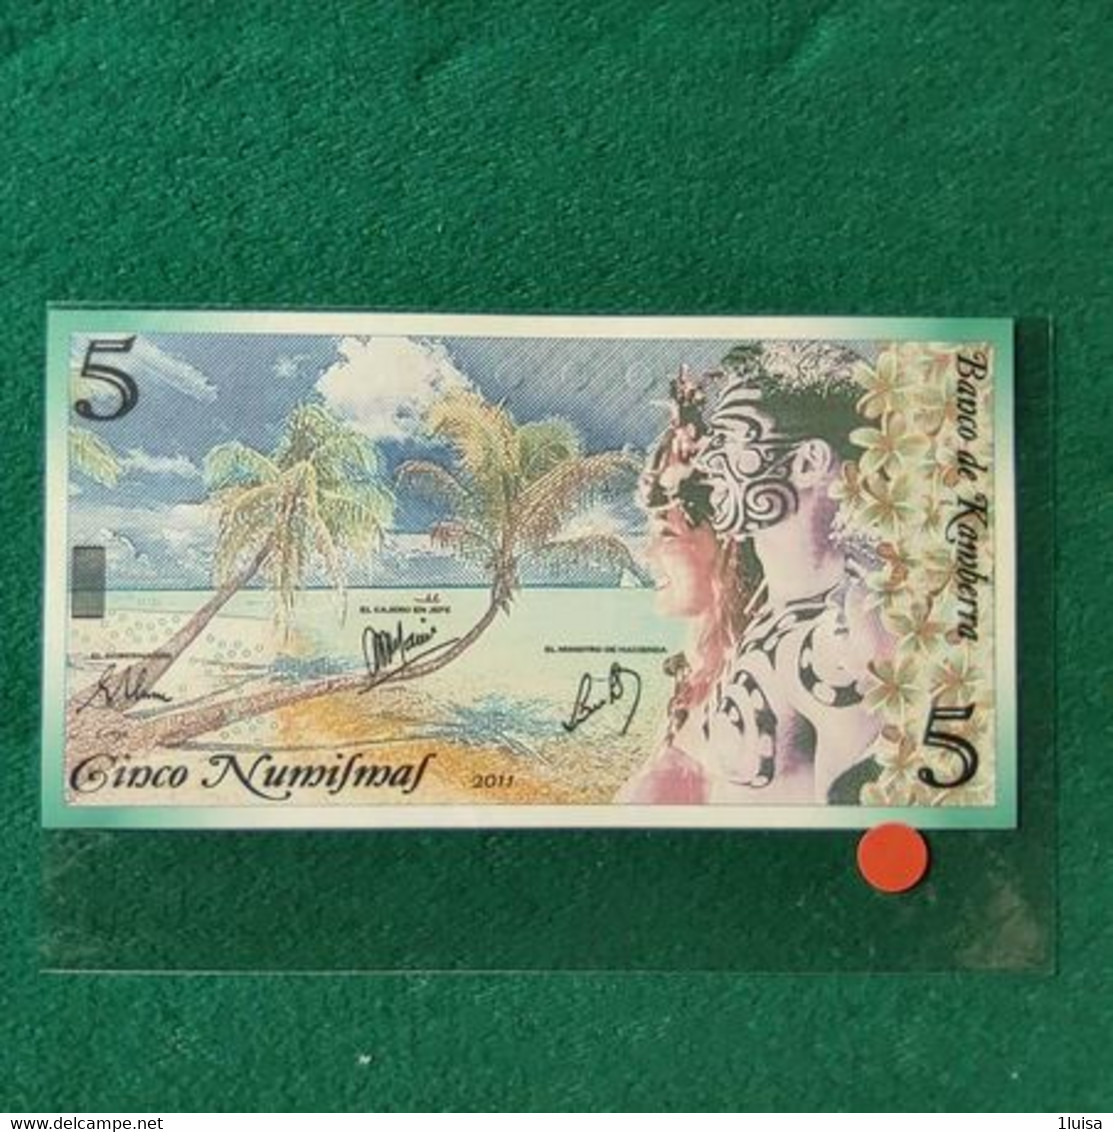 AUSTRALIA FANTASY KAMBERRA 5 - 1988 (10$ Kunststoffgeldscheine)